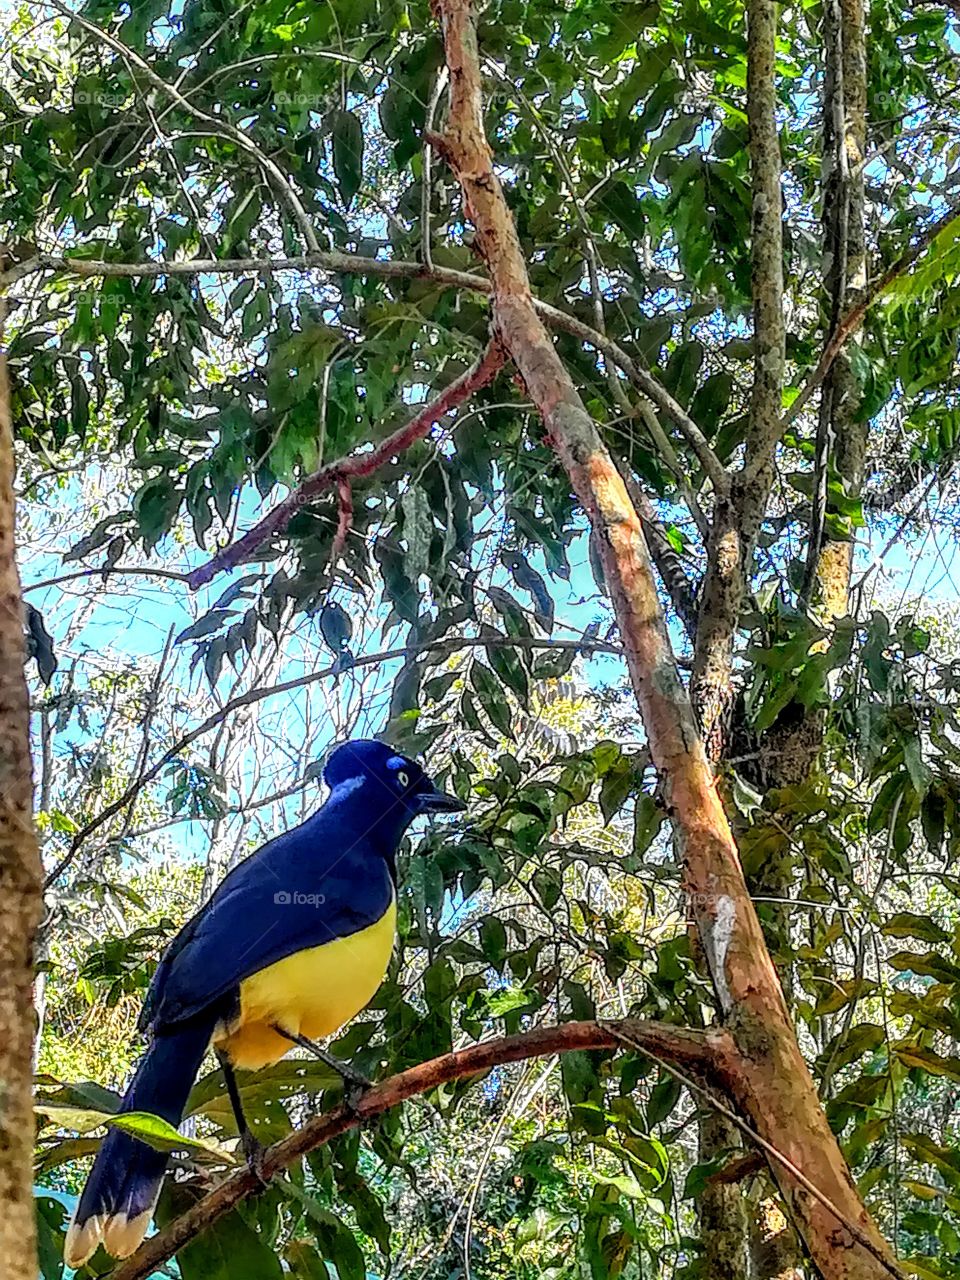 Uraca in the jungle of Argentina. 
Puerto Iguazú, Misiones, Argentina.